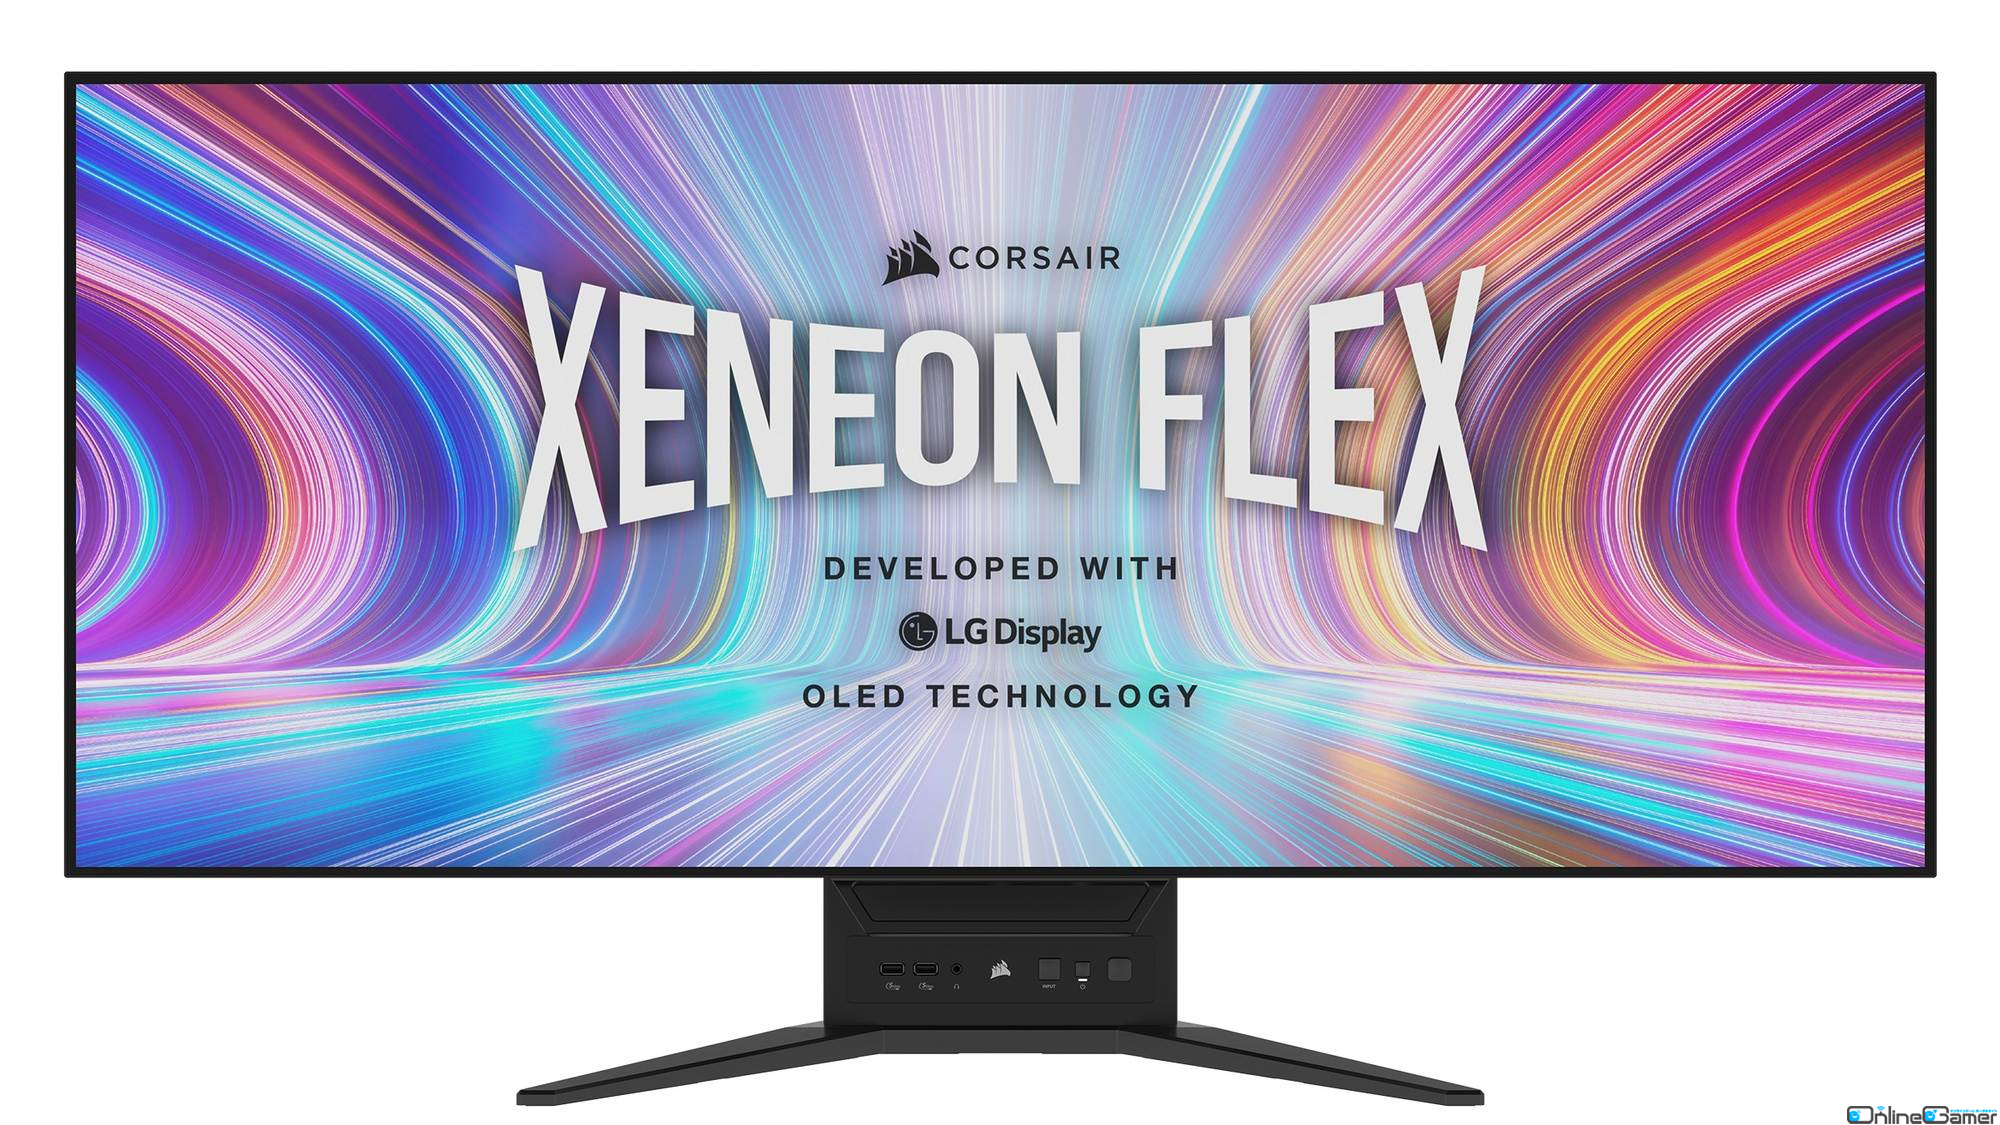 湾曲率800Rまで曲げられるフレキシブルパネルを採用したゲーミングモニター「XENEON FLEX 45WQHD240」が2月15日に発売！の画像